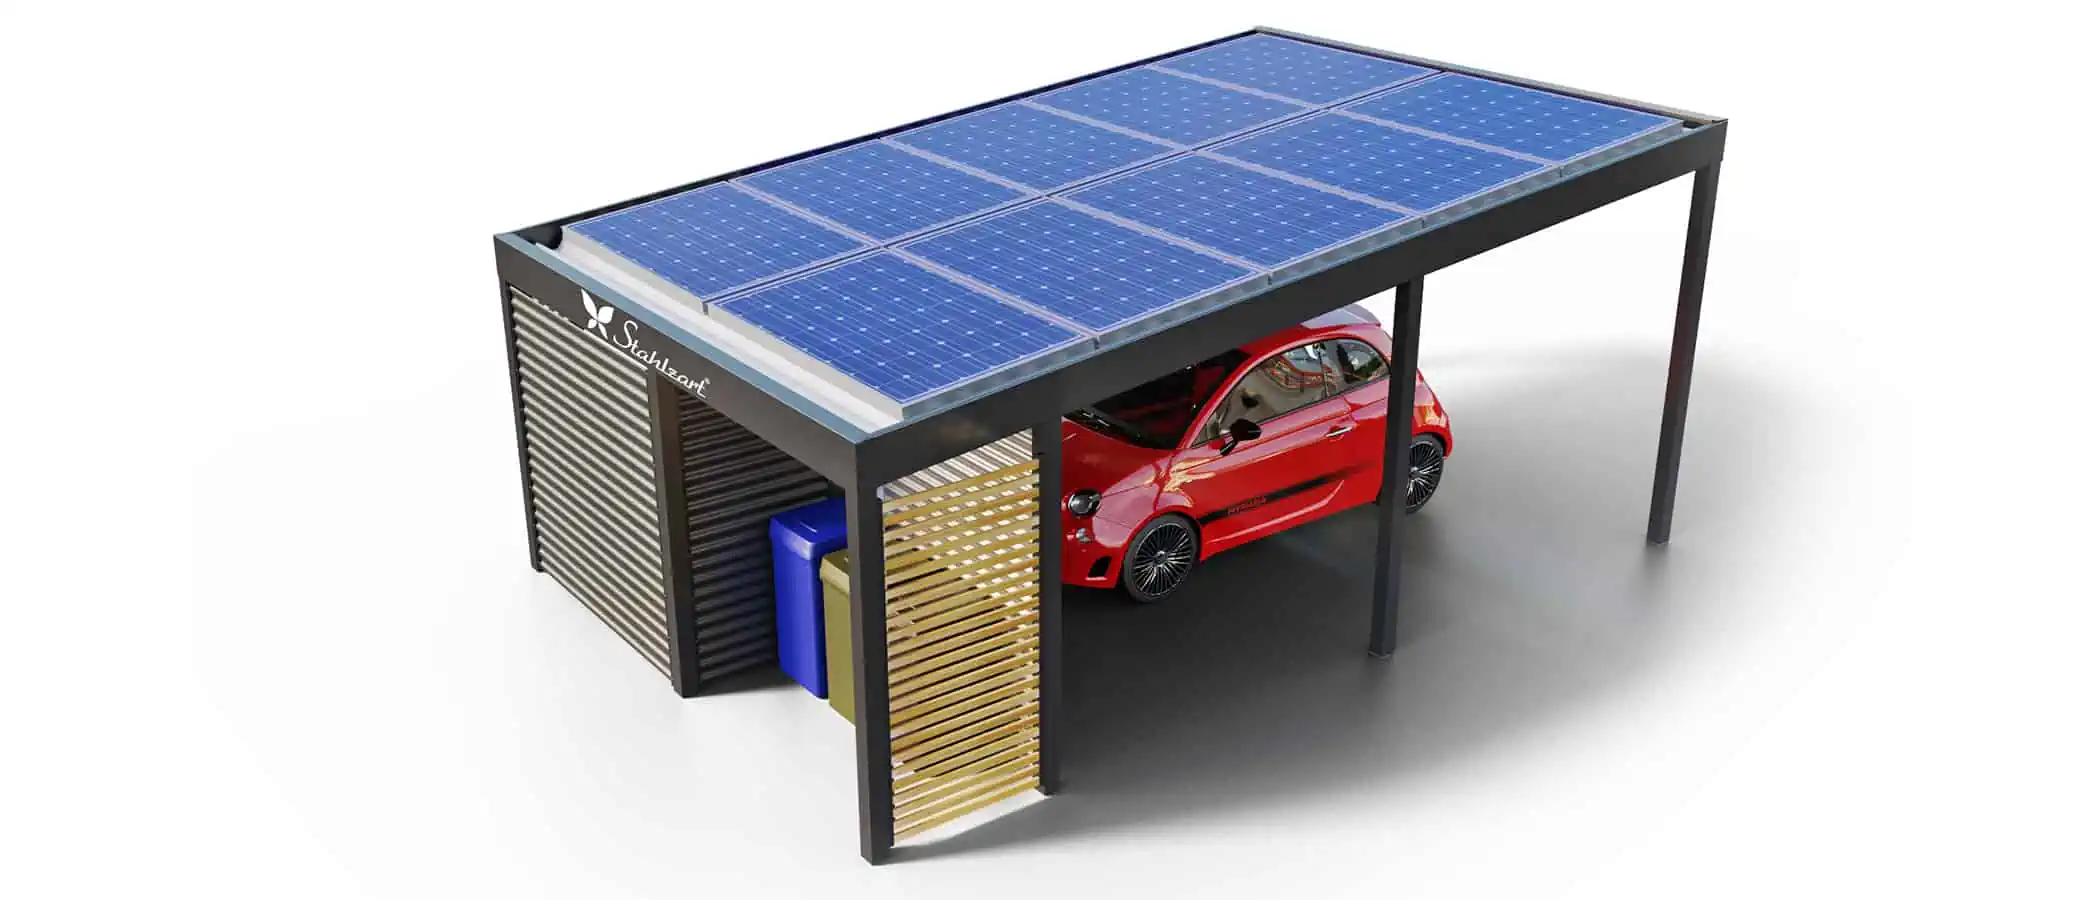 solar-carport-mit-pultdach-carports-solarcarport-pultdach-carportdach-design-strom-angebot-photovoltaikanlage-solardach-dachflaeche-holz-metall-stahl-mit-schuppen-design-stahlzart